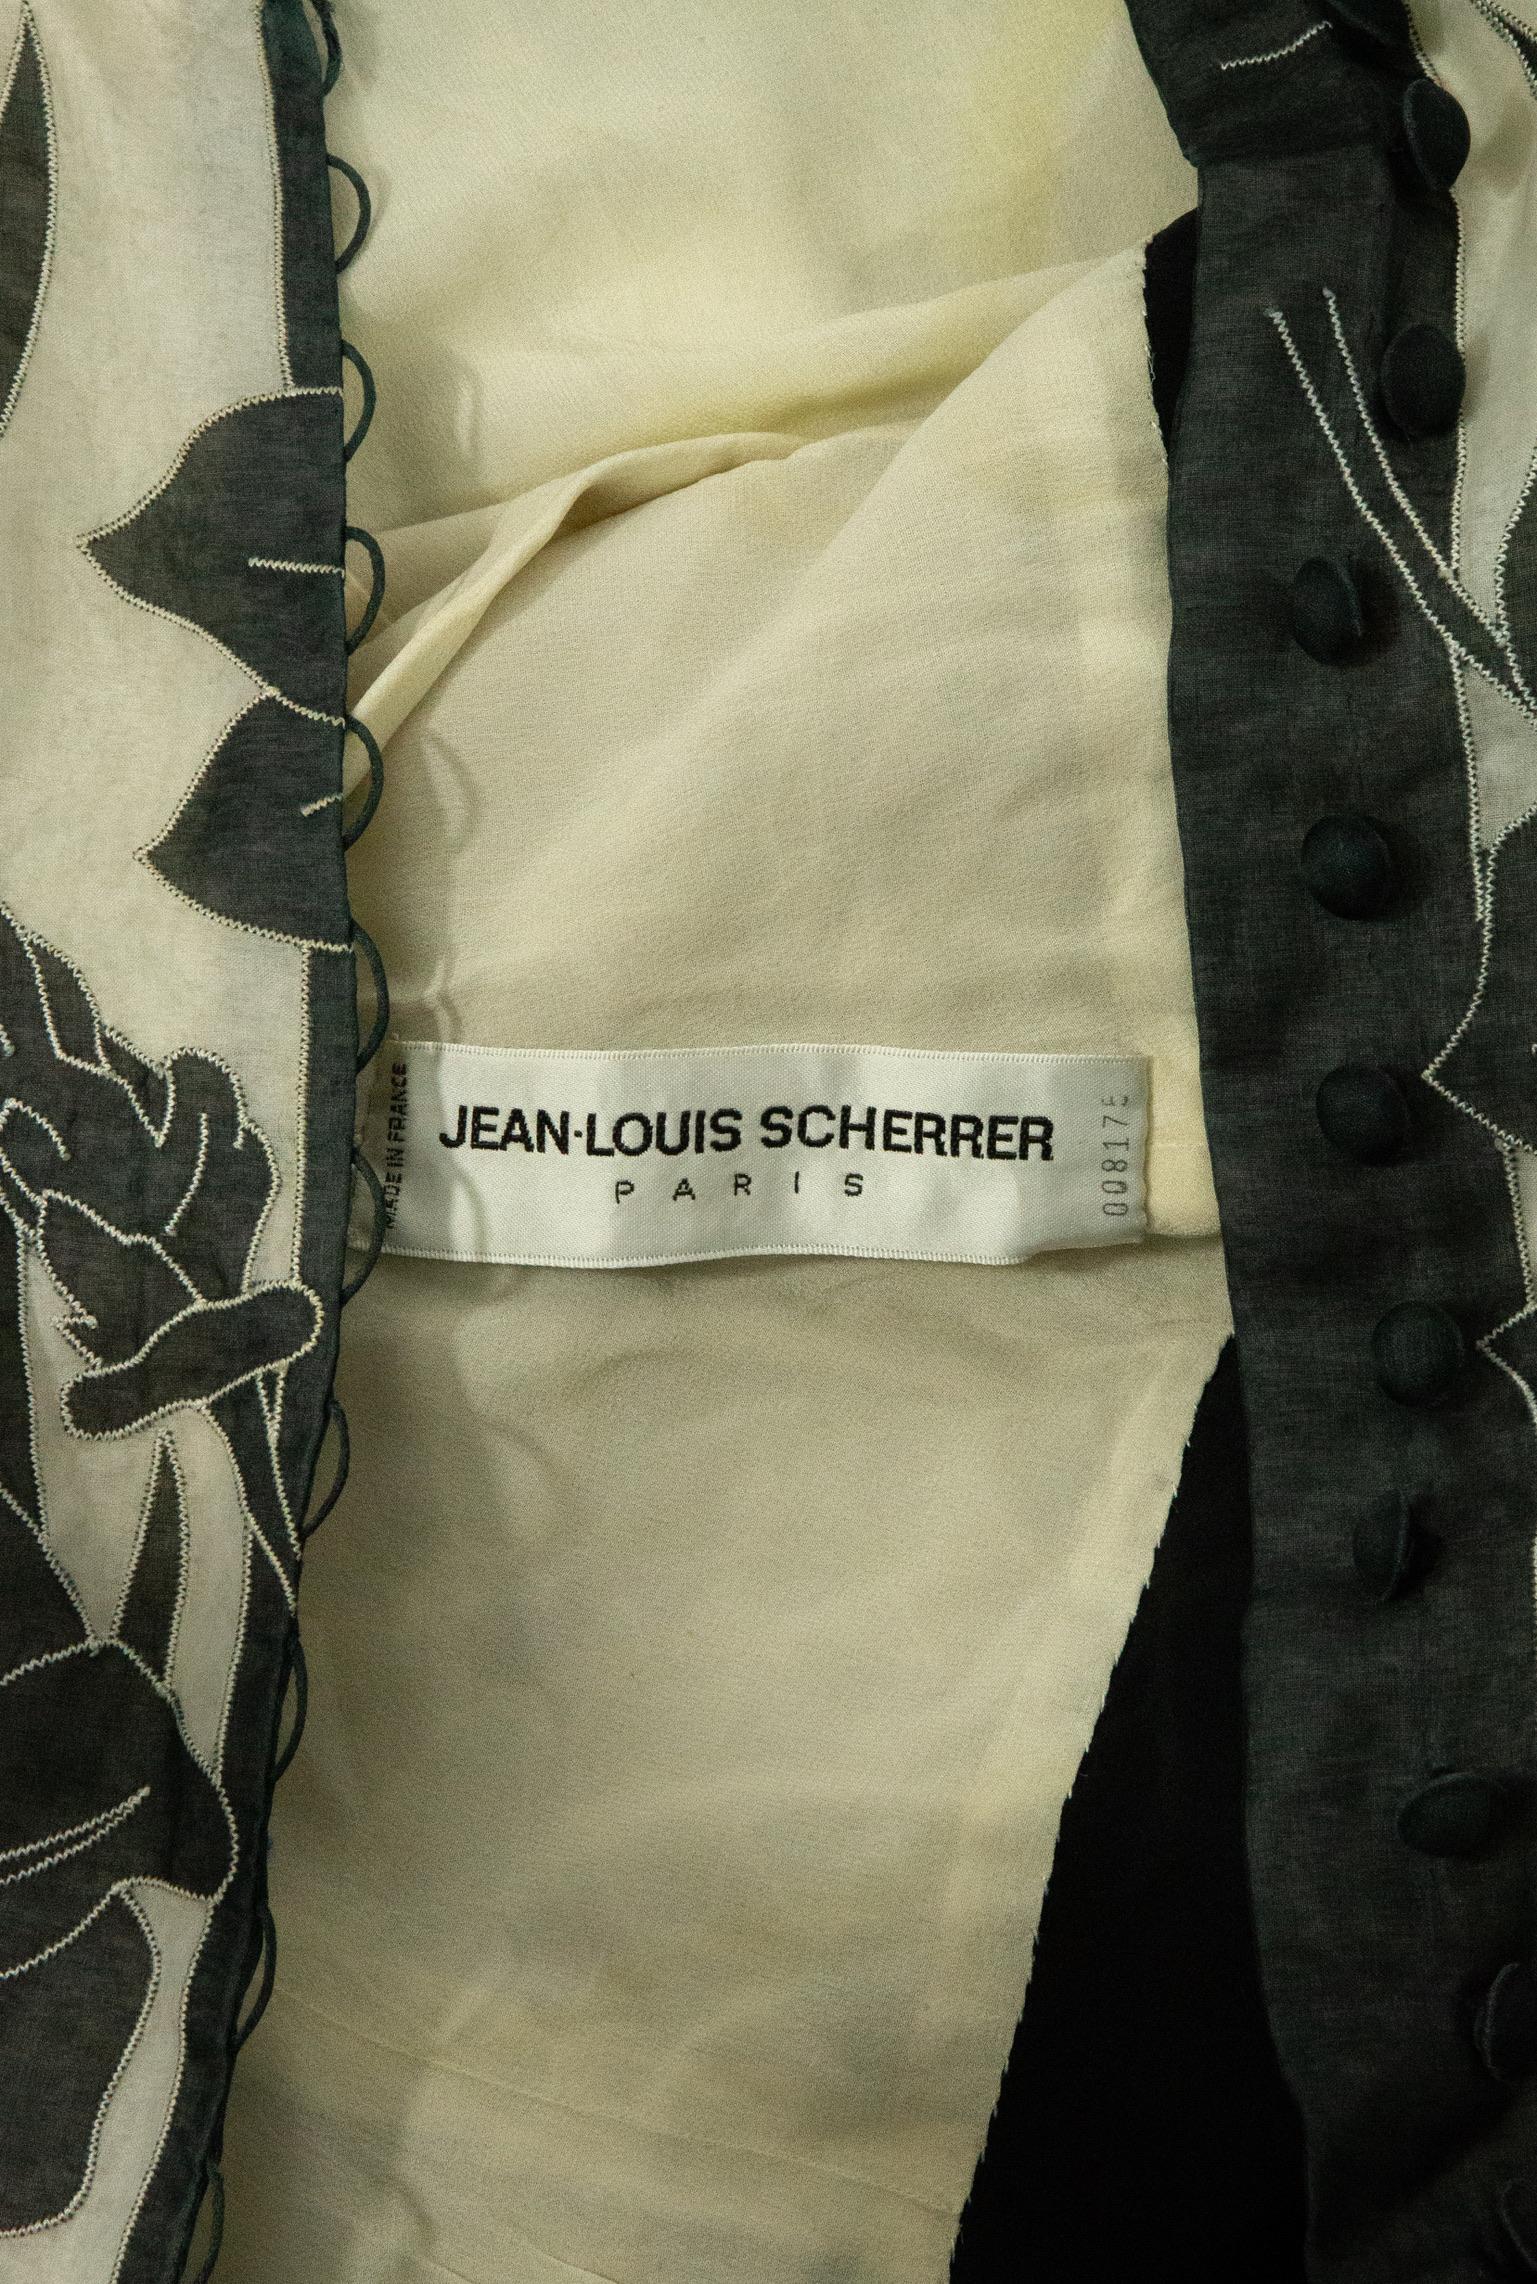 Jean-Louis Scherrer Couture Black Organza Drop Waist Dress with Floral Applique For Sale 6